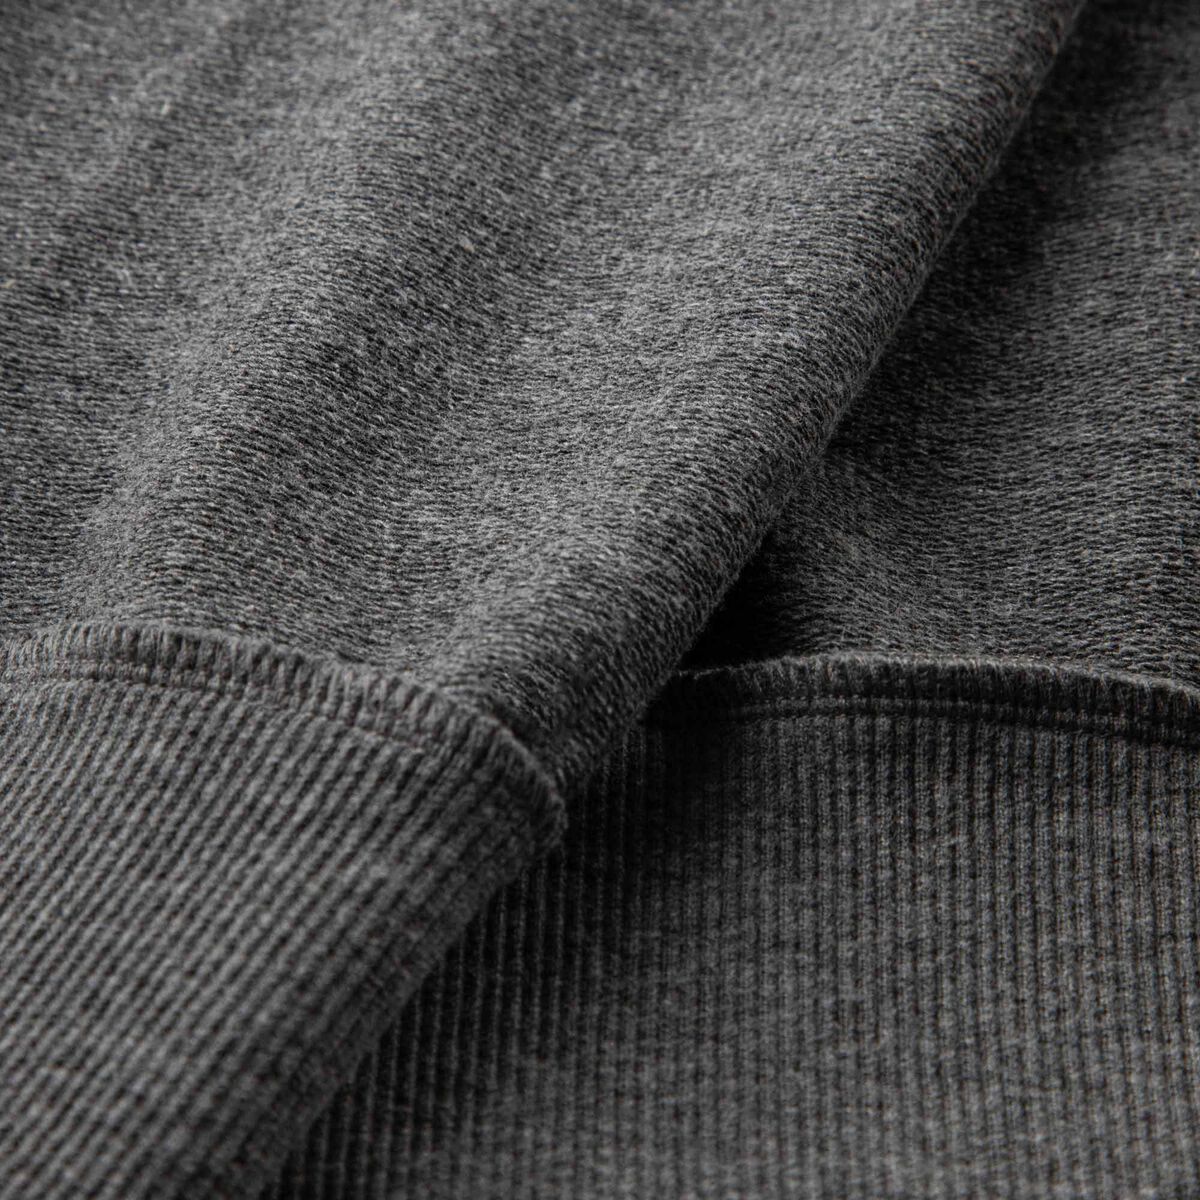 Rossignol Pantalón corto de algodón logo para hombre grey